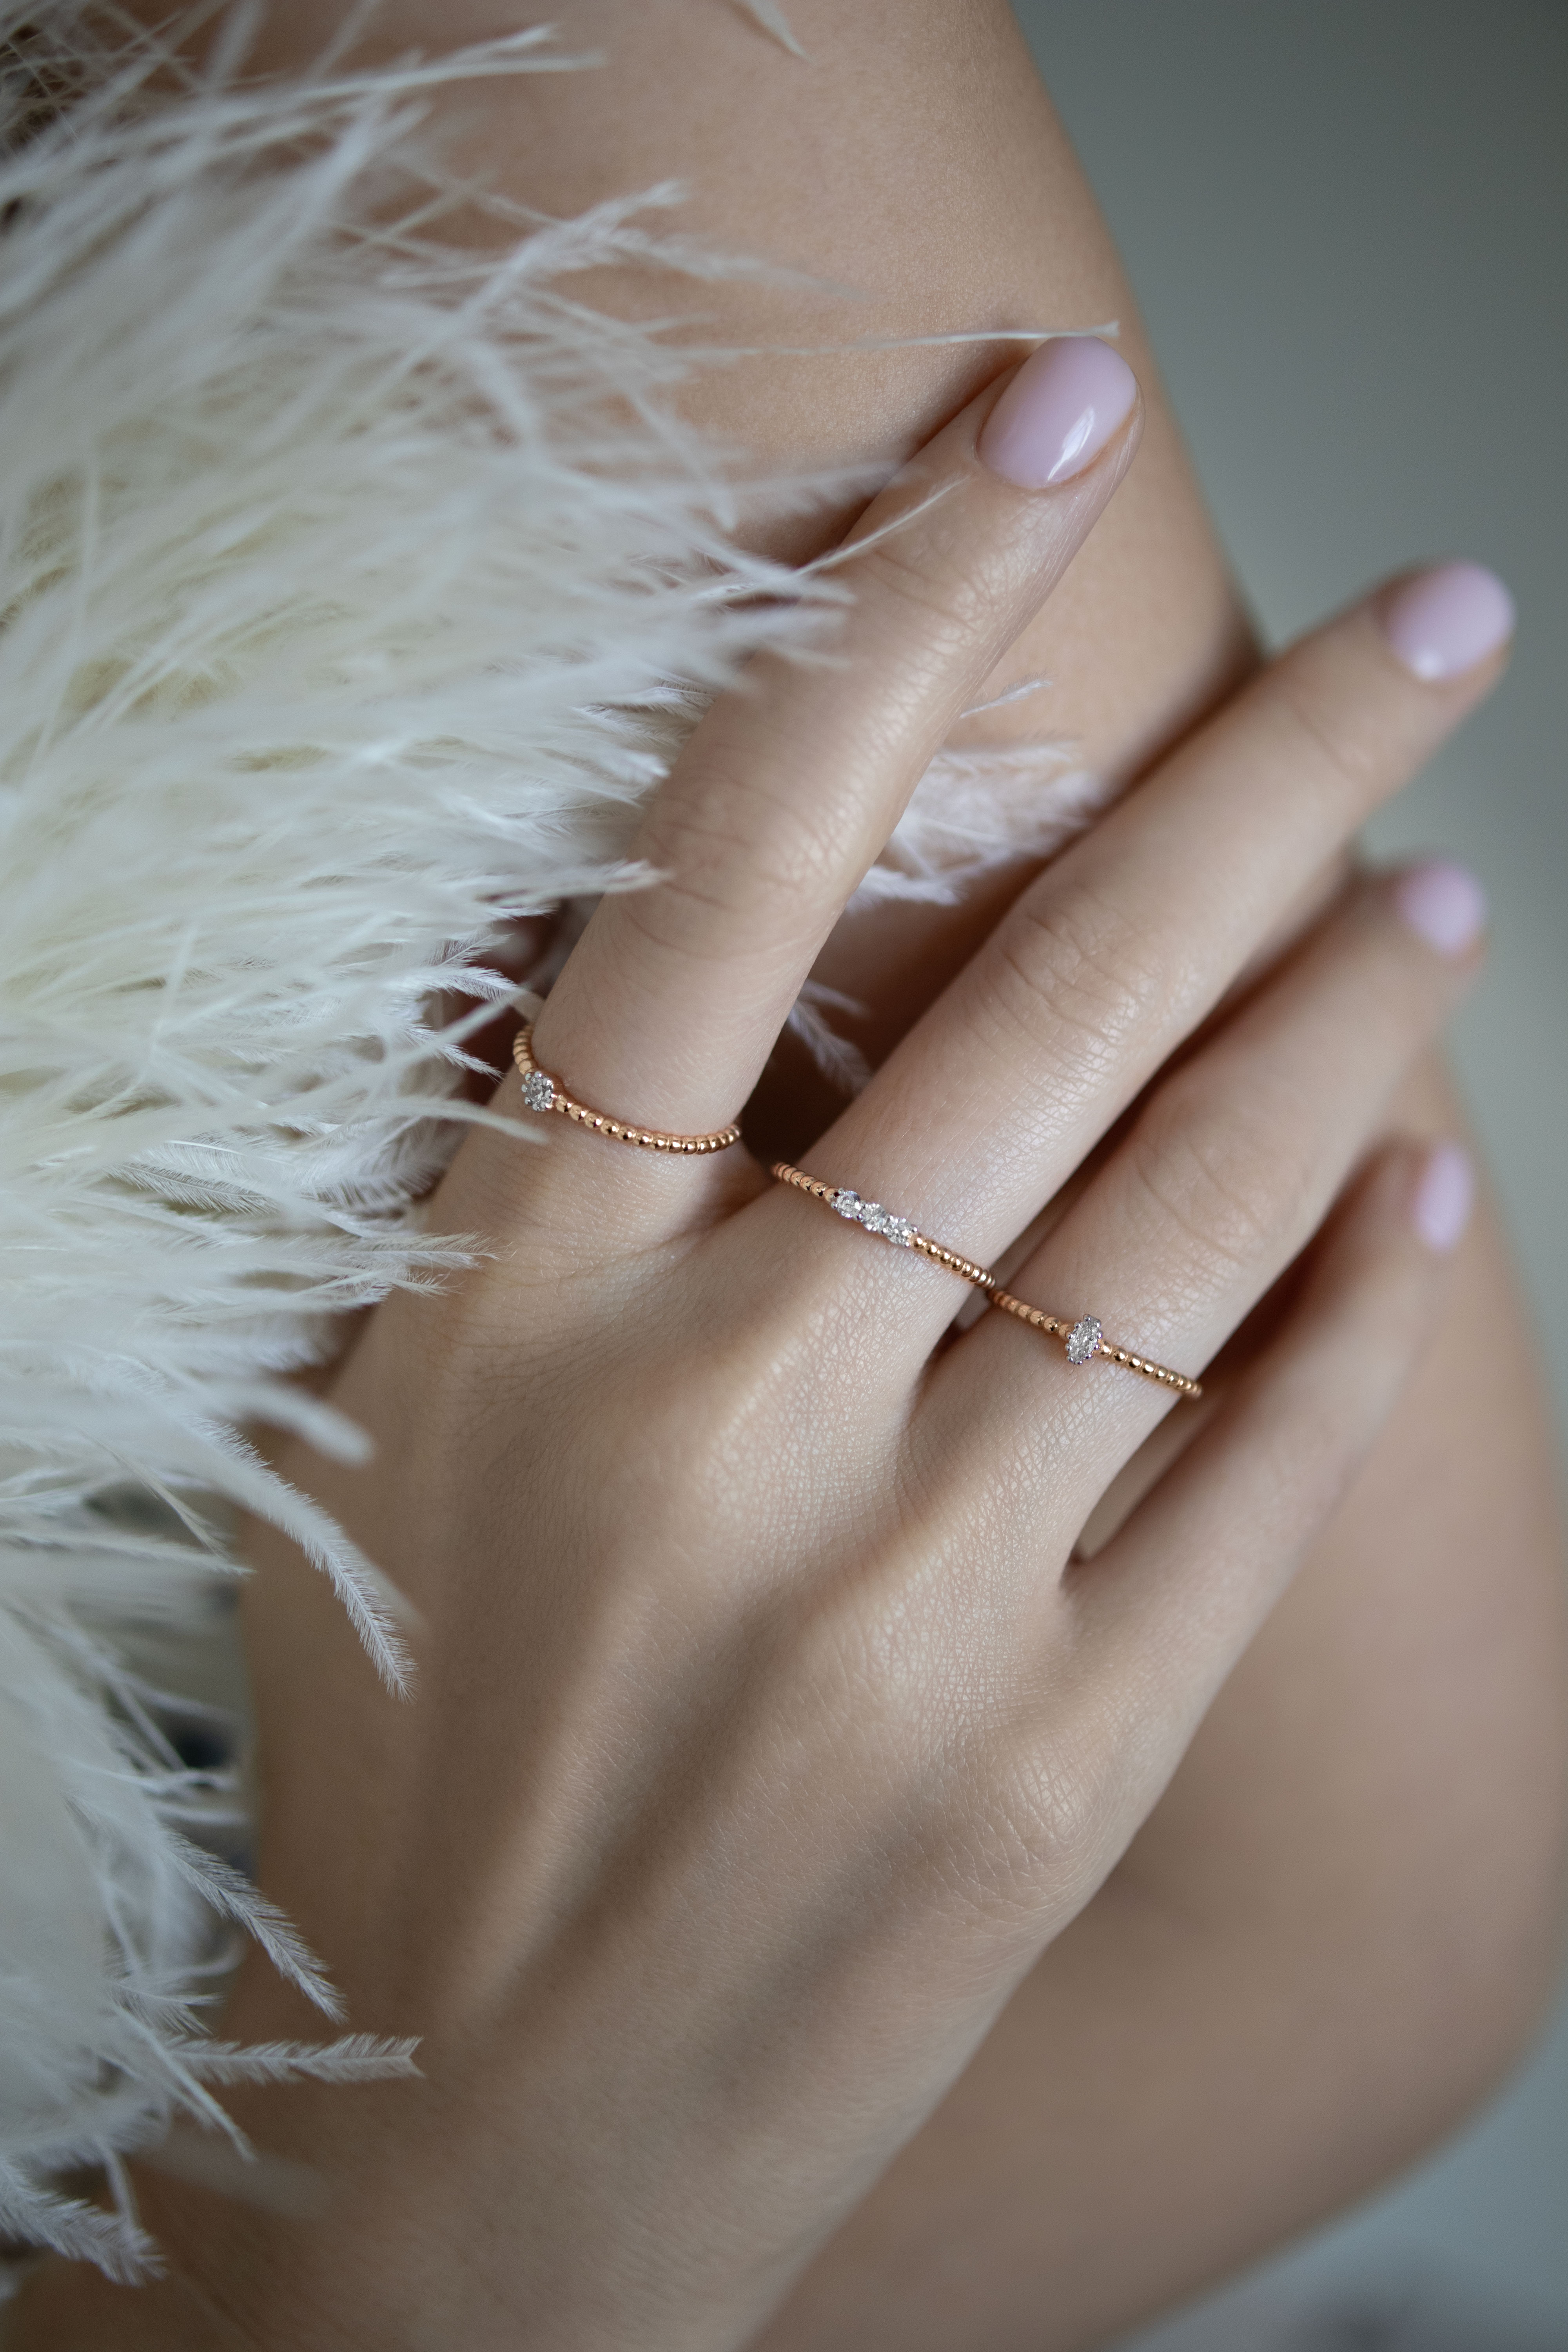 Кольца: Золотое кольцо Бабл с овальным фианитом можно купить в ювелирном гардеробе MOMNT (Momentsilver), интернет-магазине украшений из серебра. Золото 585, вставка: фианит. Артикул 